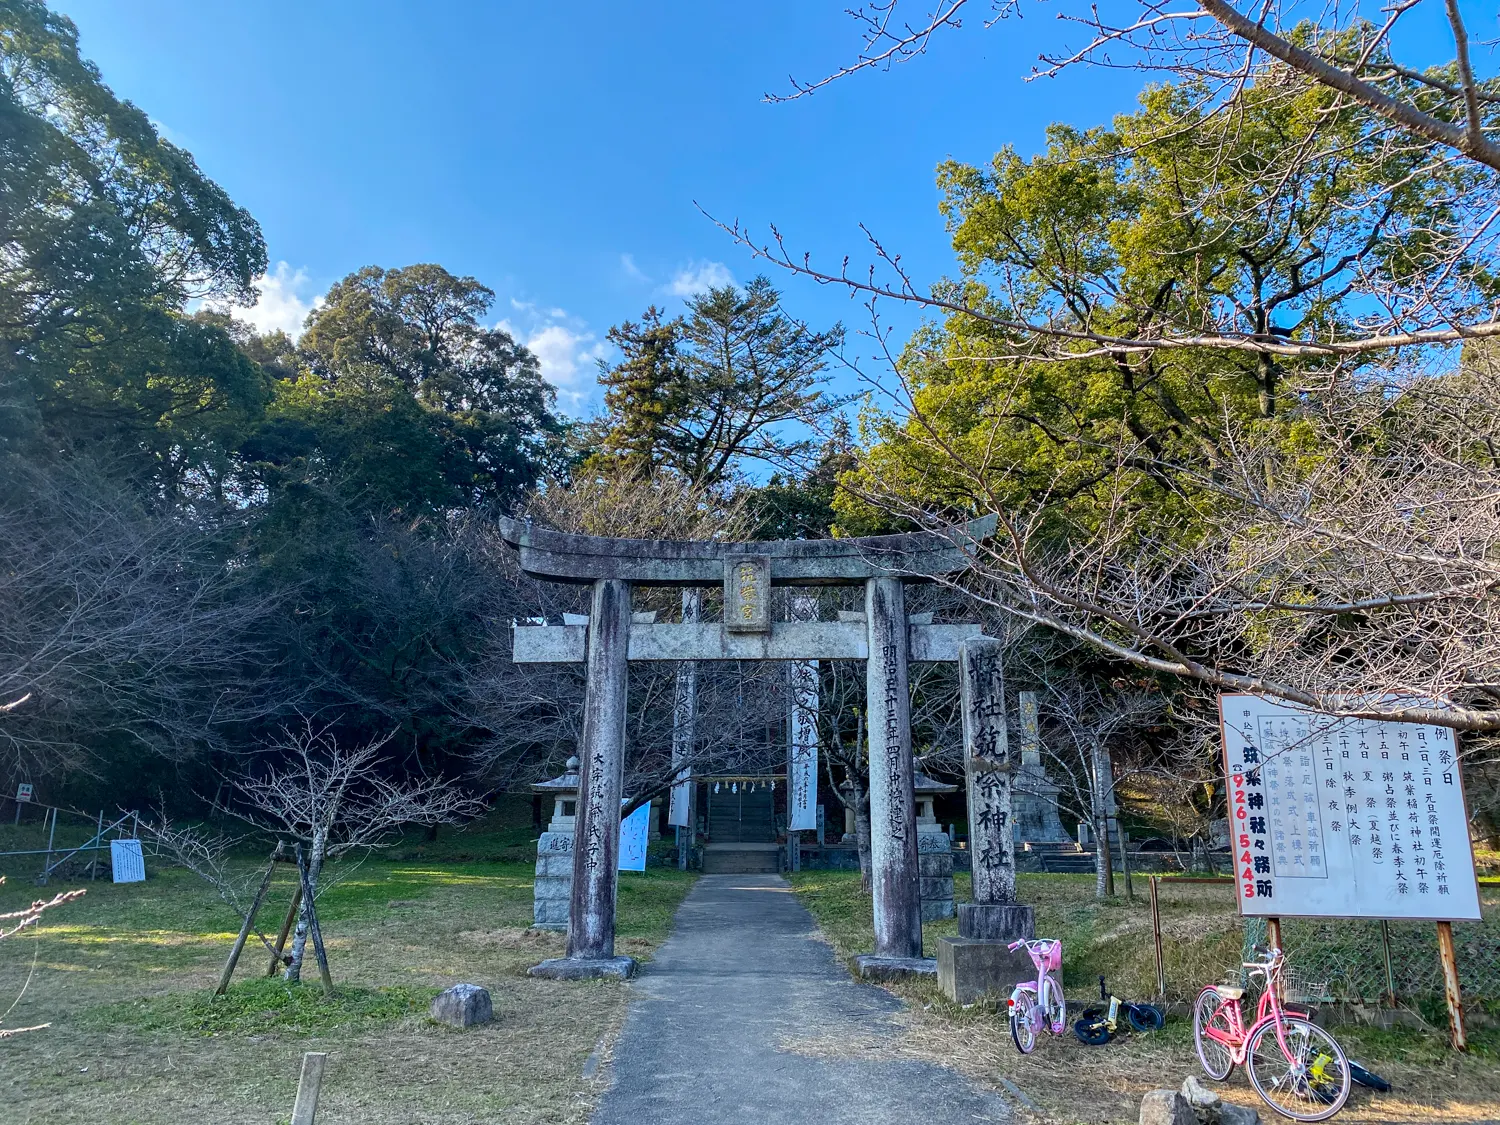 「筑紫神社」の無料で停めれる大駐車場